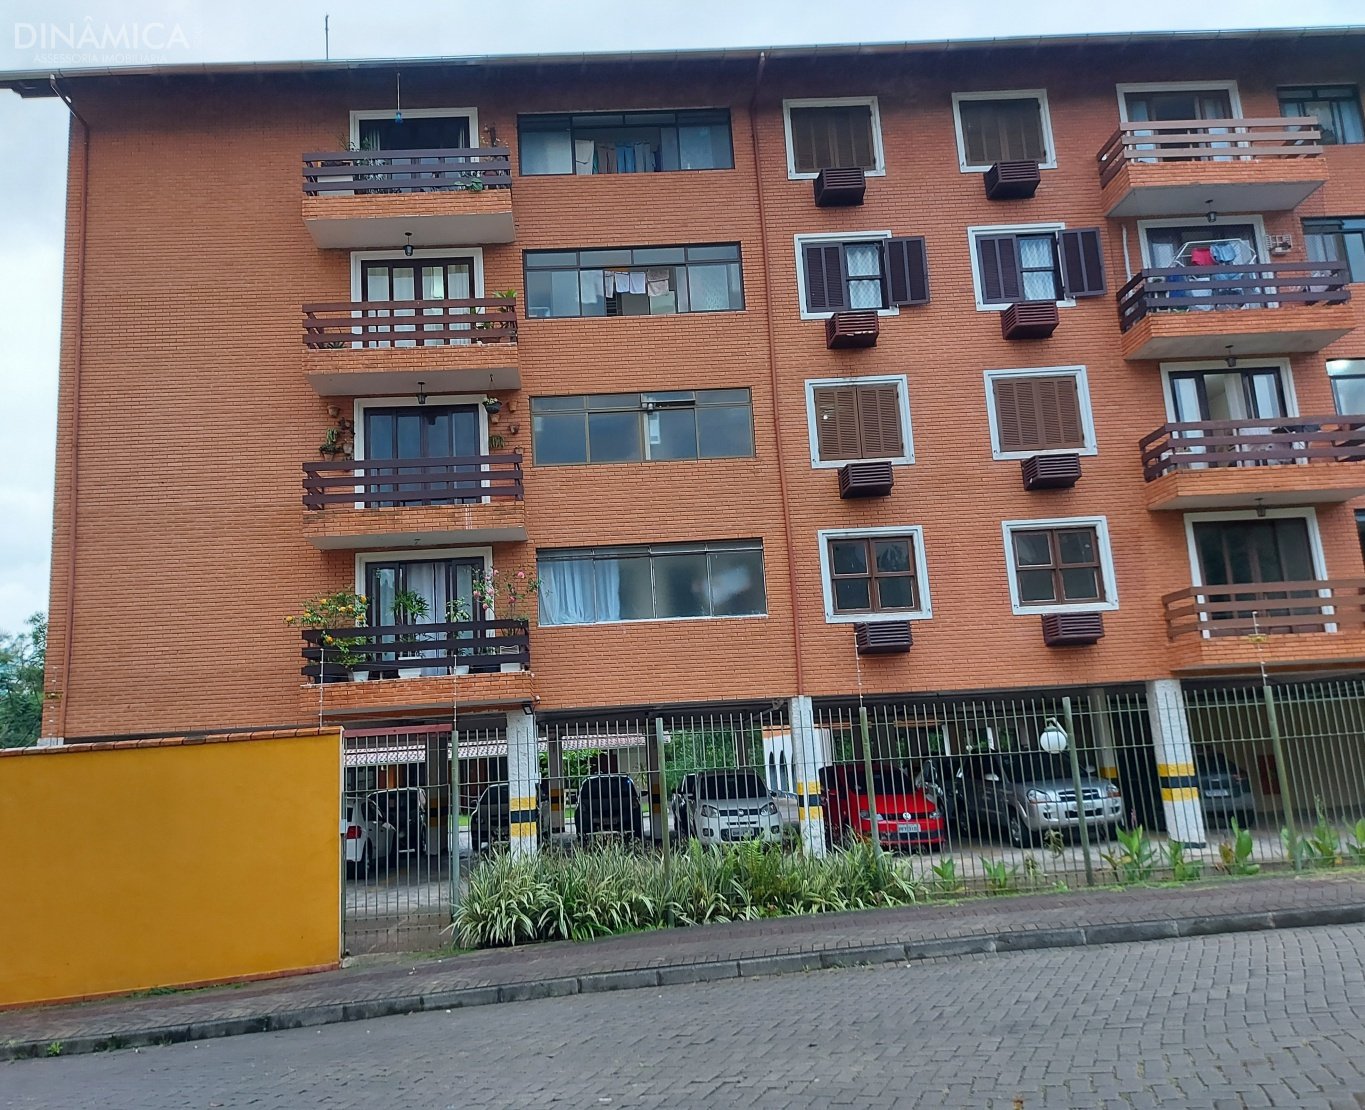 Apartamento com 03 quartos, bairro Garcia, Blumenau, dinamica sul, imobiliaria em blumenau, floresta negra, apartamento a venda, semimobiliado, aquecimento a gas